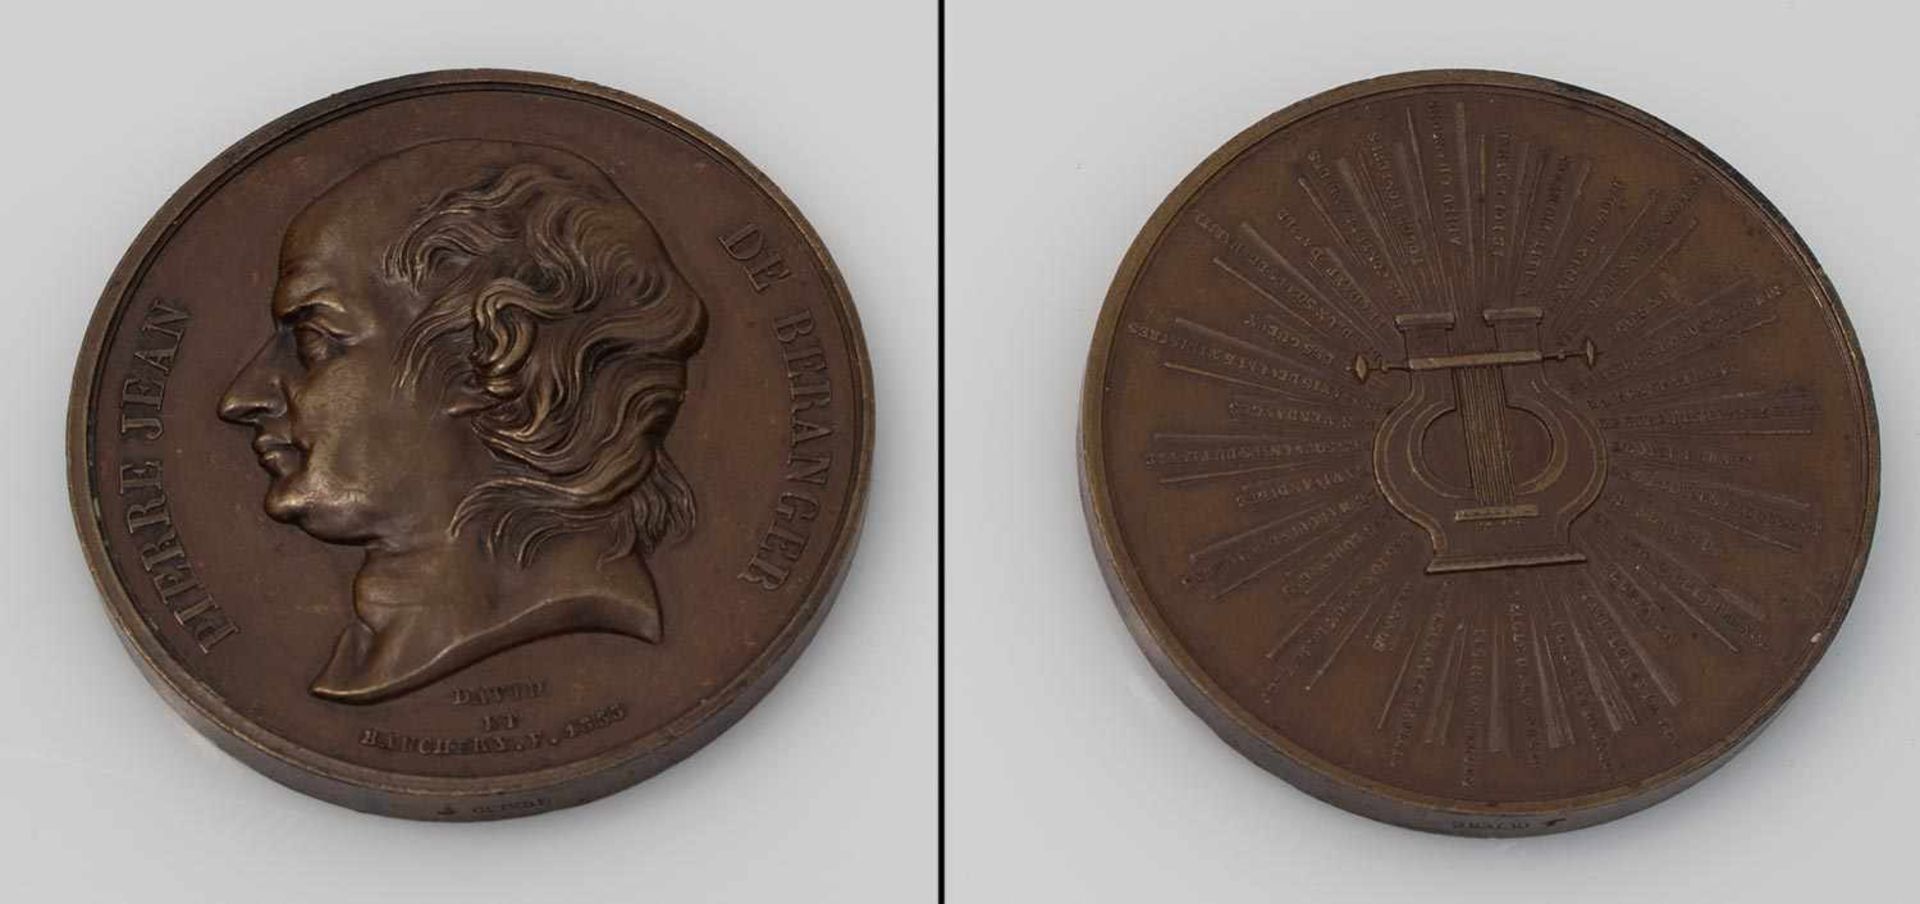 Bronzemedaile Frankreich Pierre Jean de Beranger (1780 - 1857), Chansonier, Entwurf von 1833